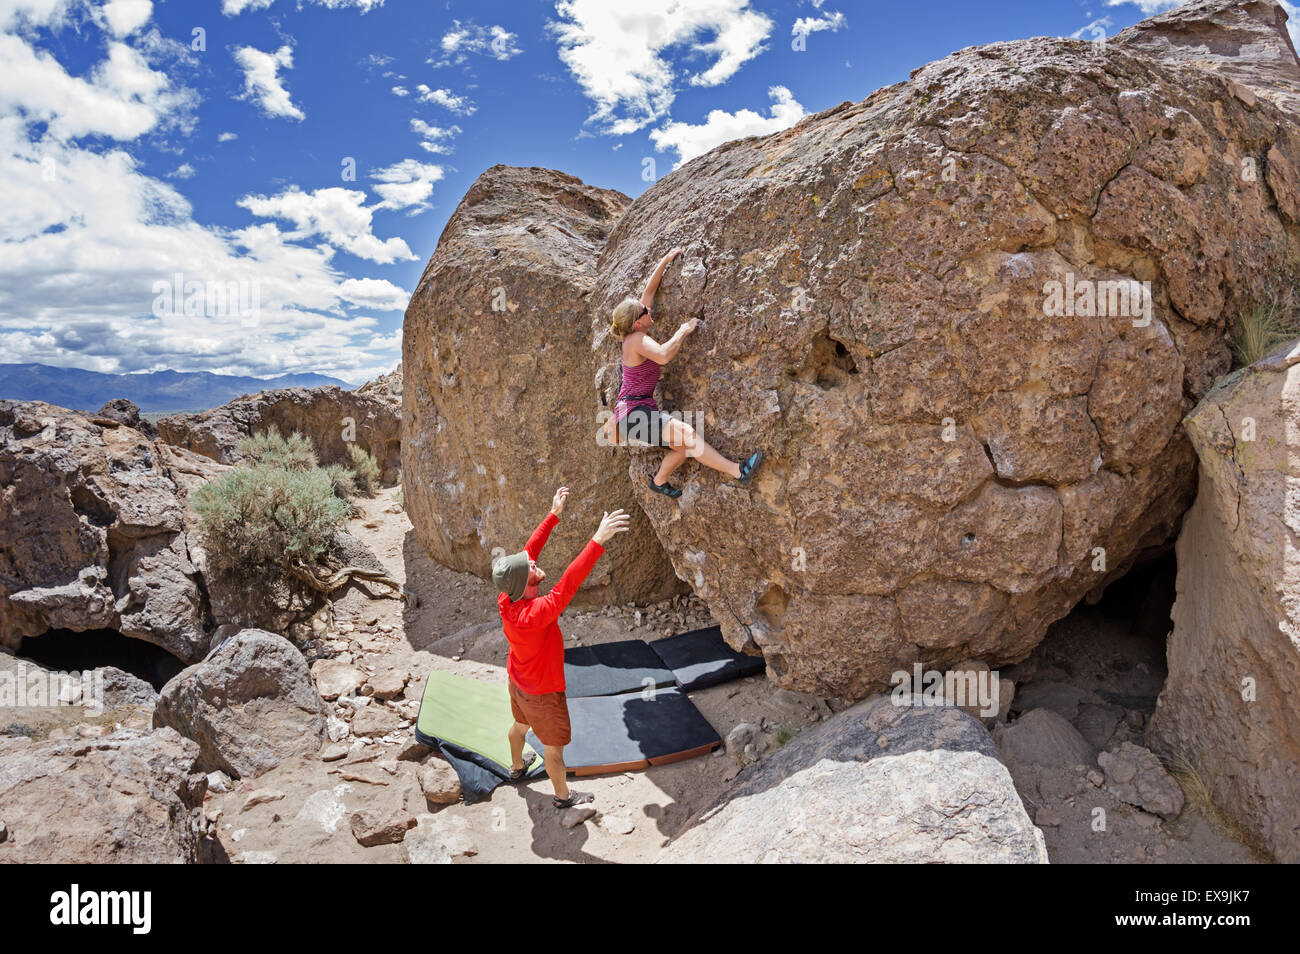 Un par trepar rocas en el Happy rocas con la mujer y el hombre manchado de escalada Foto de stock